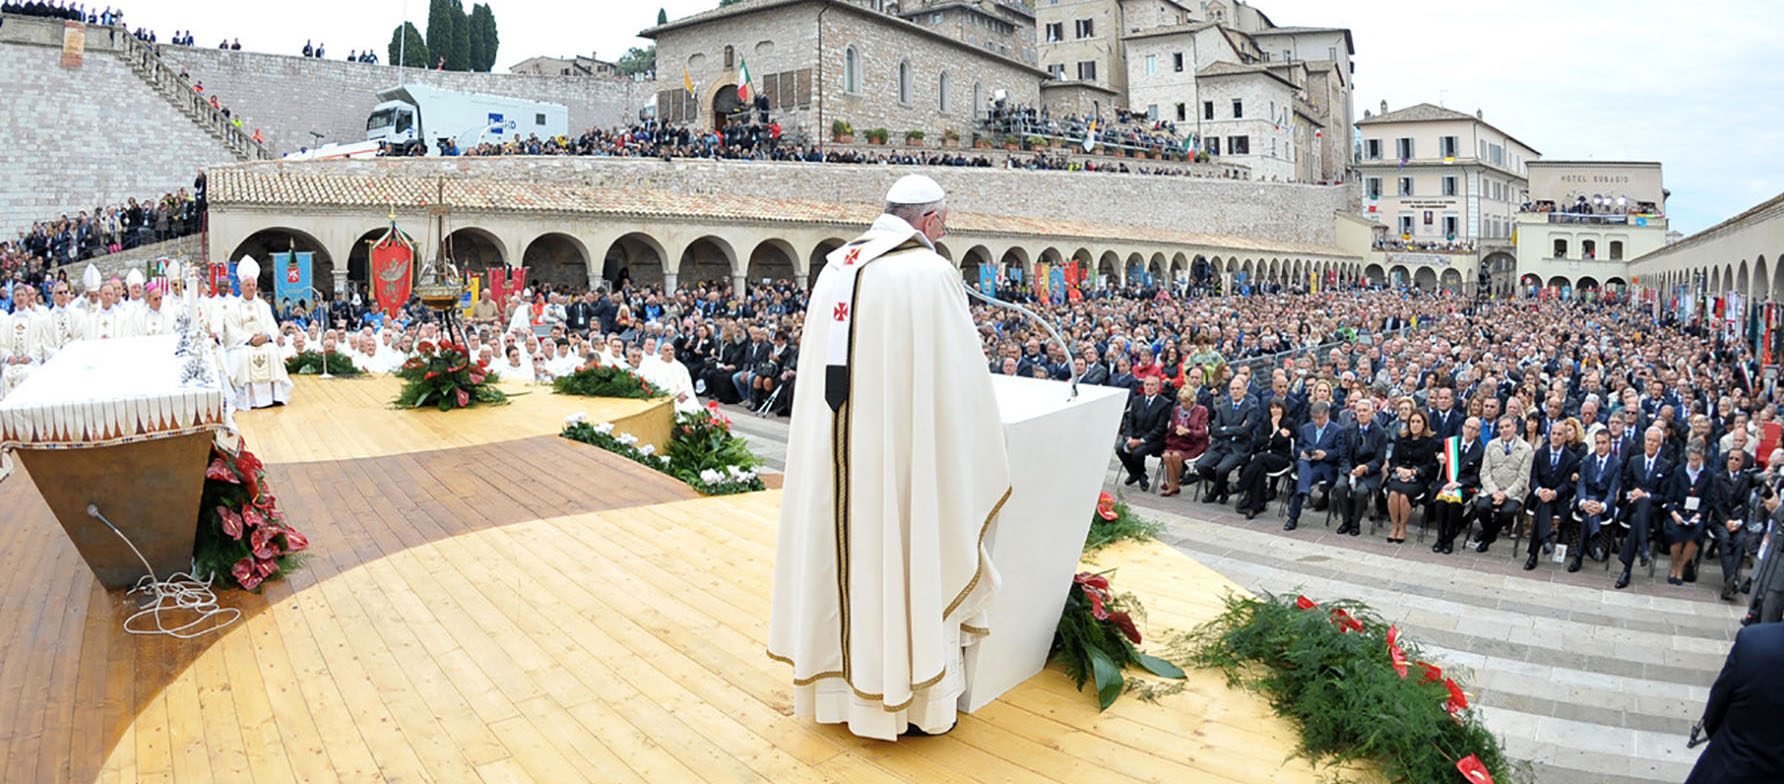 Le pape, ici en octobre 2013, se rendra à Assise le 12 novembre prochain dans le cadre de la 5e Journée mondiale des pauvres | © Keystone/AP